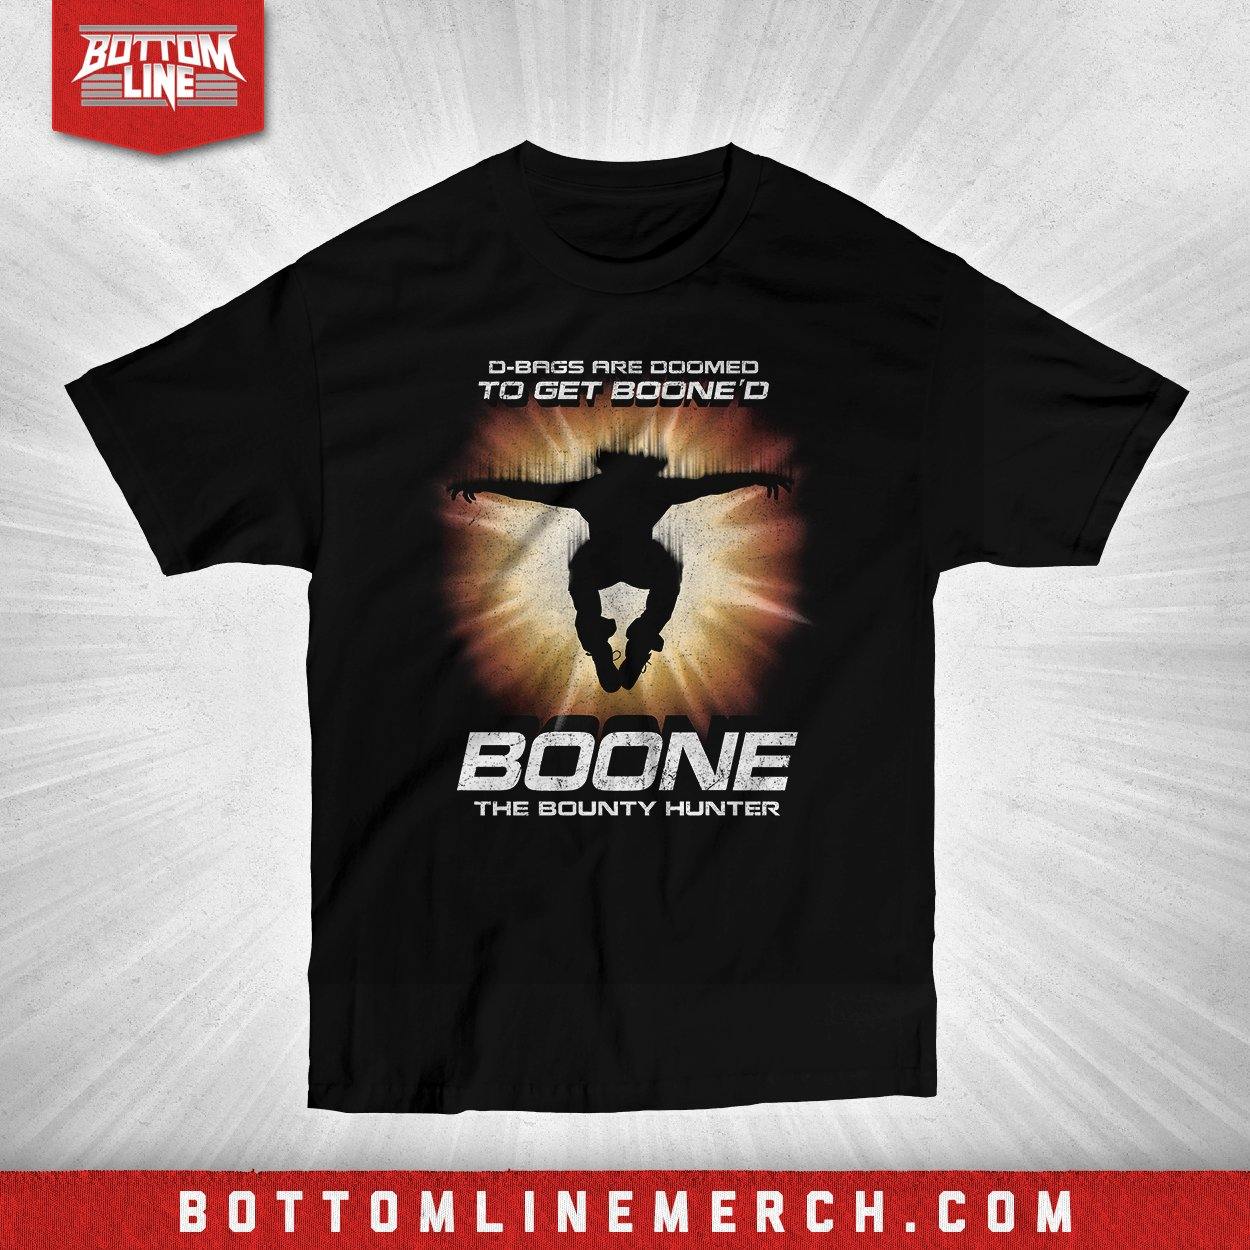 Buy Now – Boone The Bounty Hunter "D-Bags Are Doomed" Shirt – Wrestler & Wrestling Merch – Bottom Line